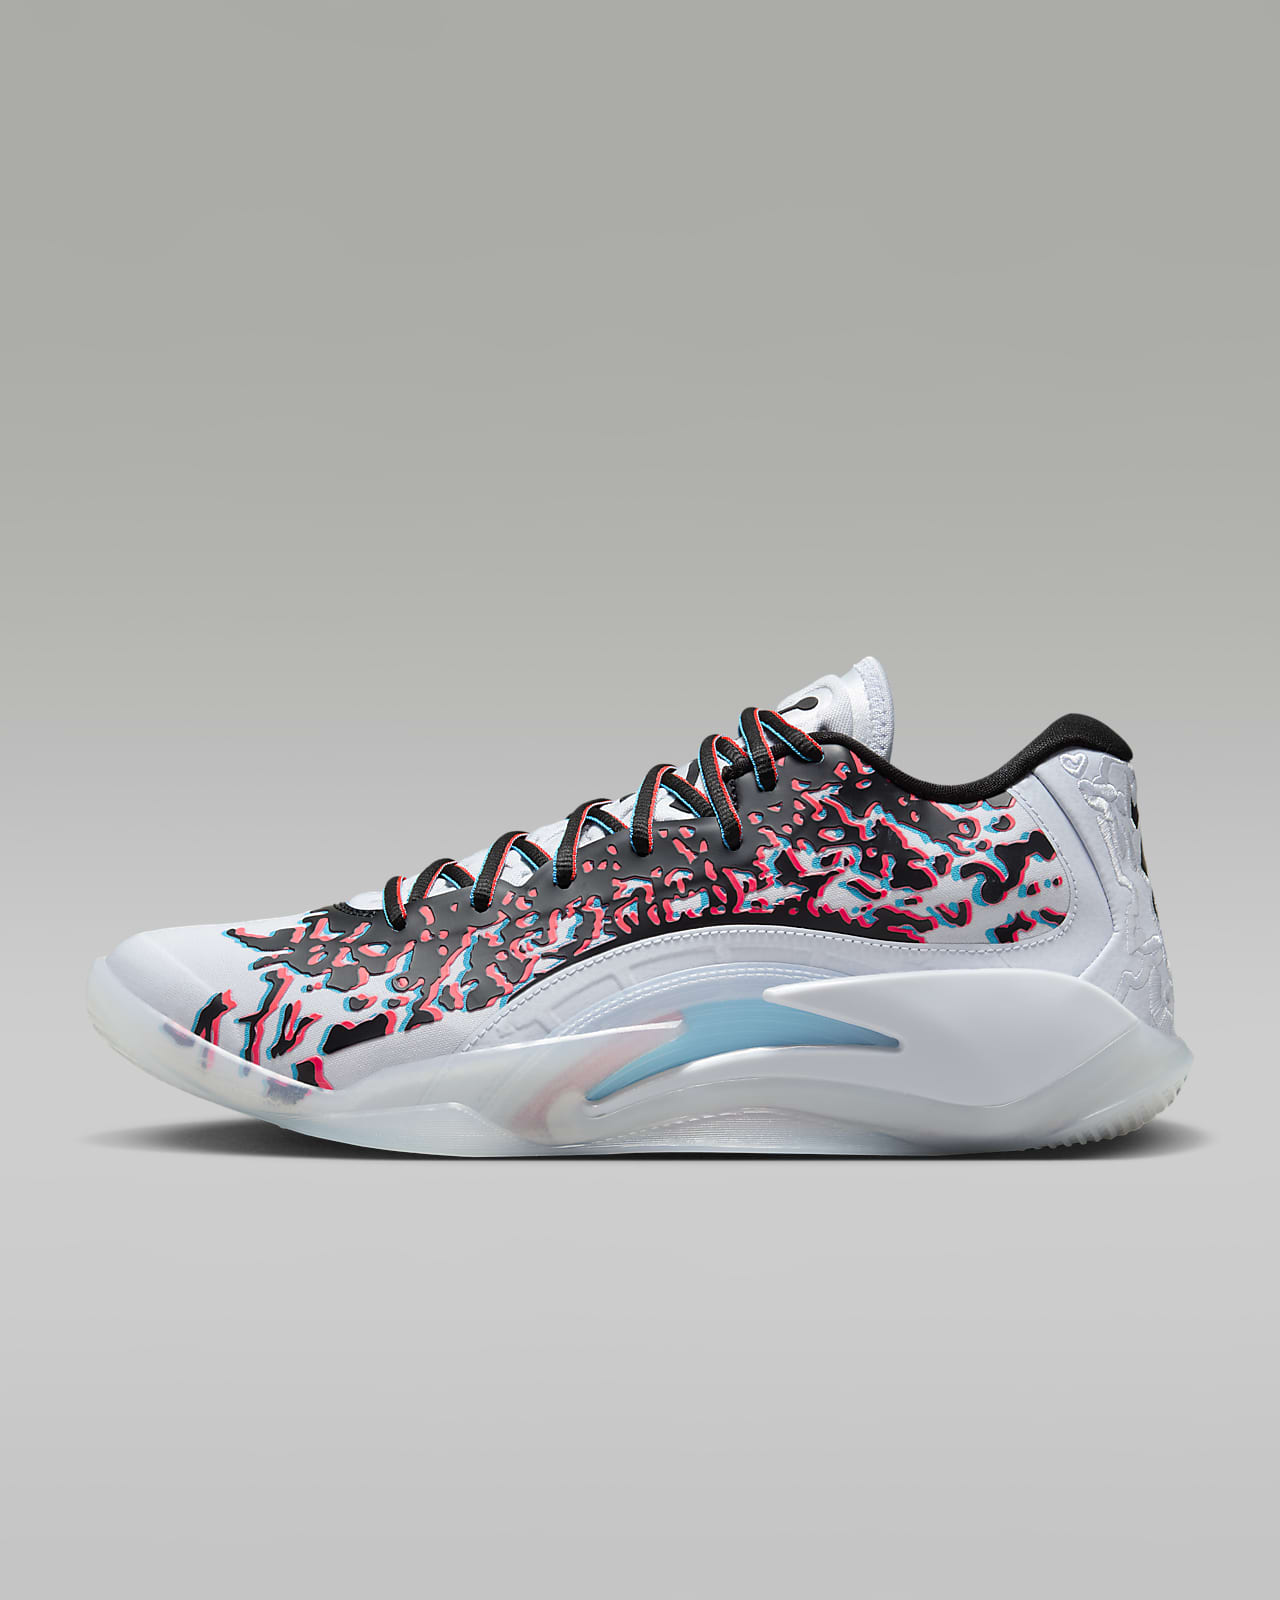 Zion 3 "Z-3D" Basketbol Ayakkabısı